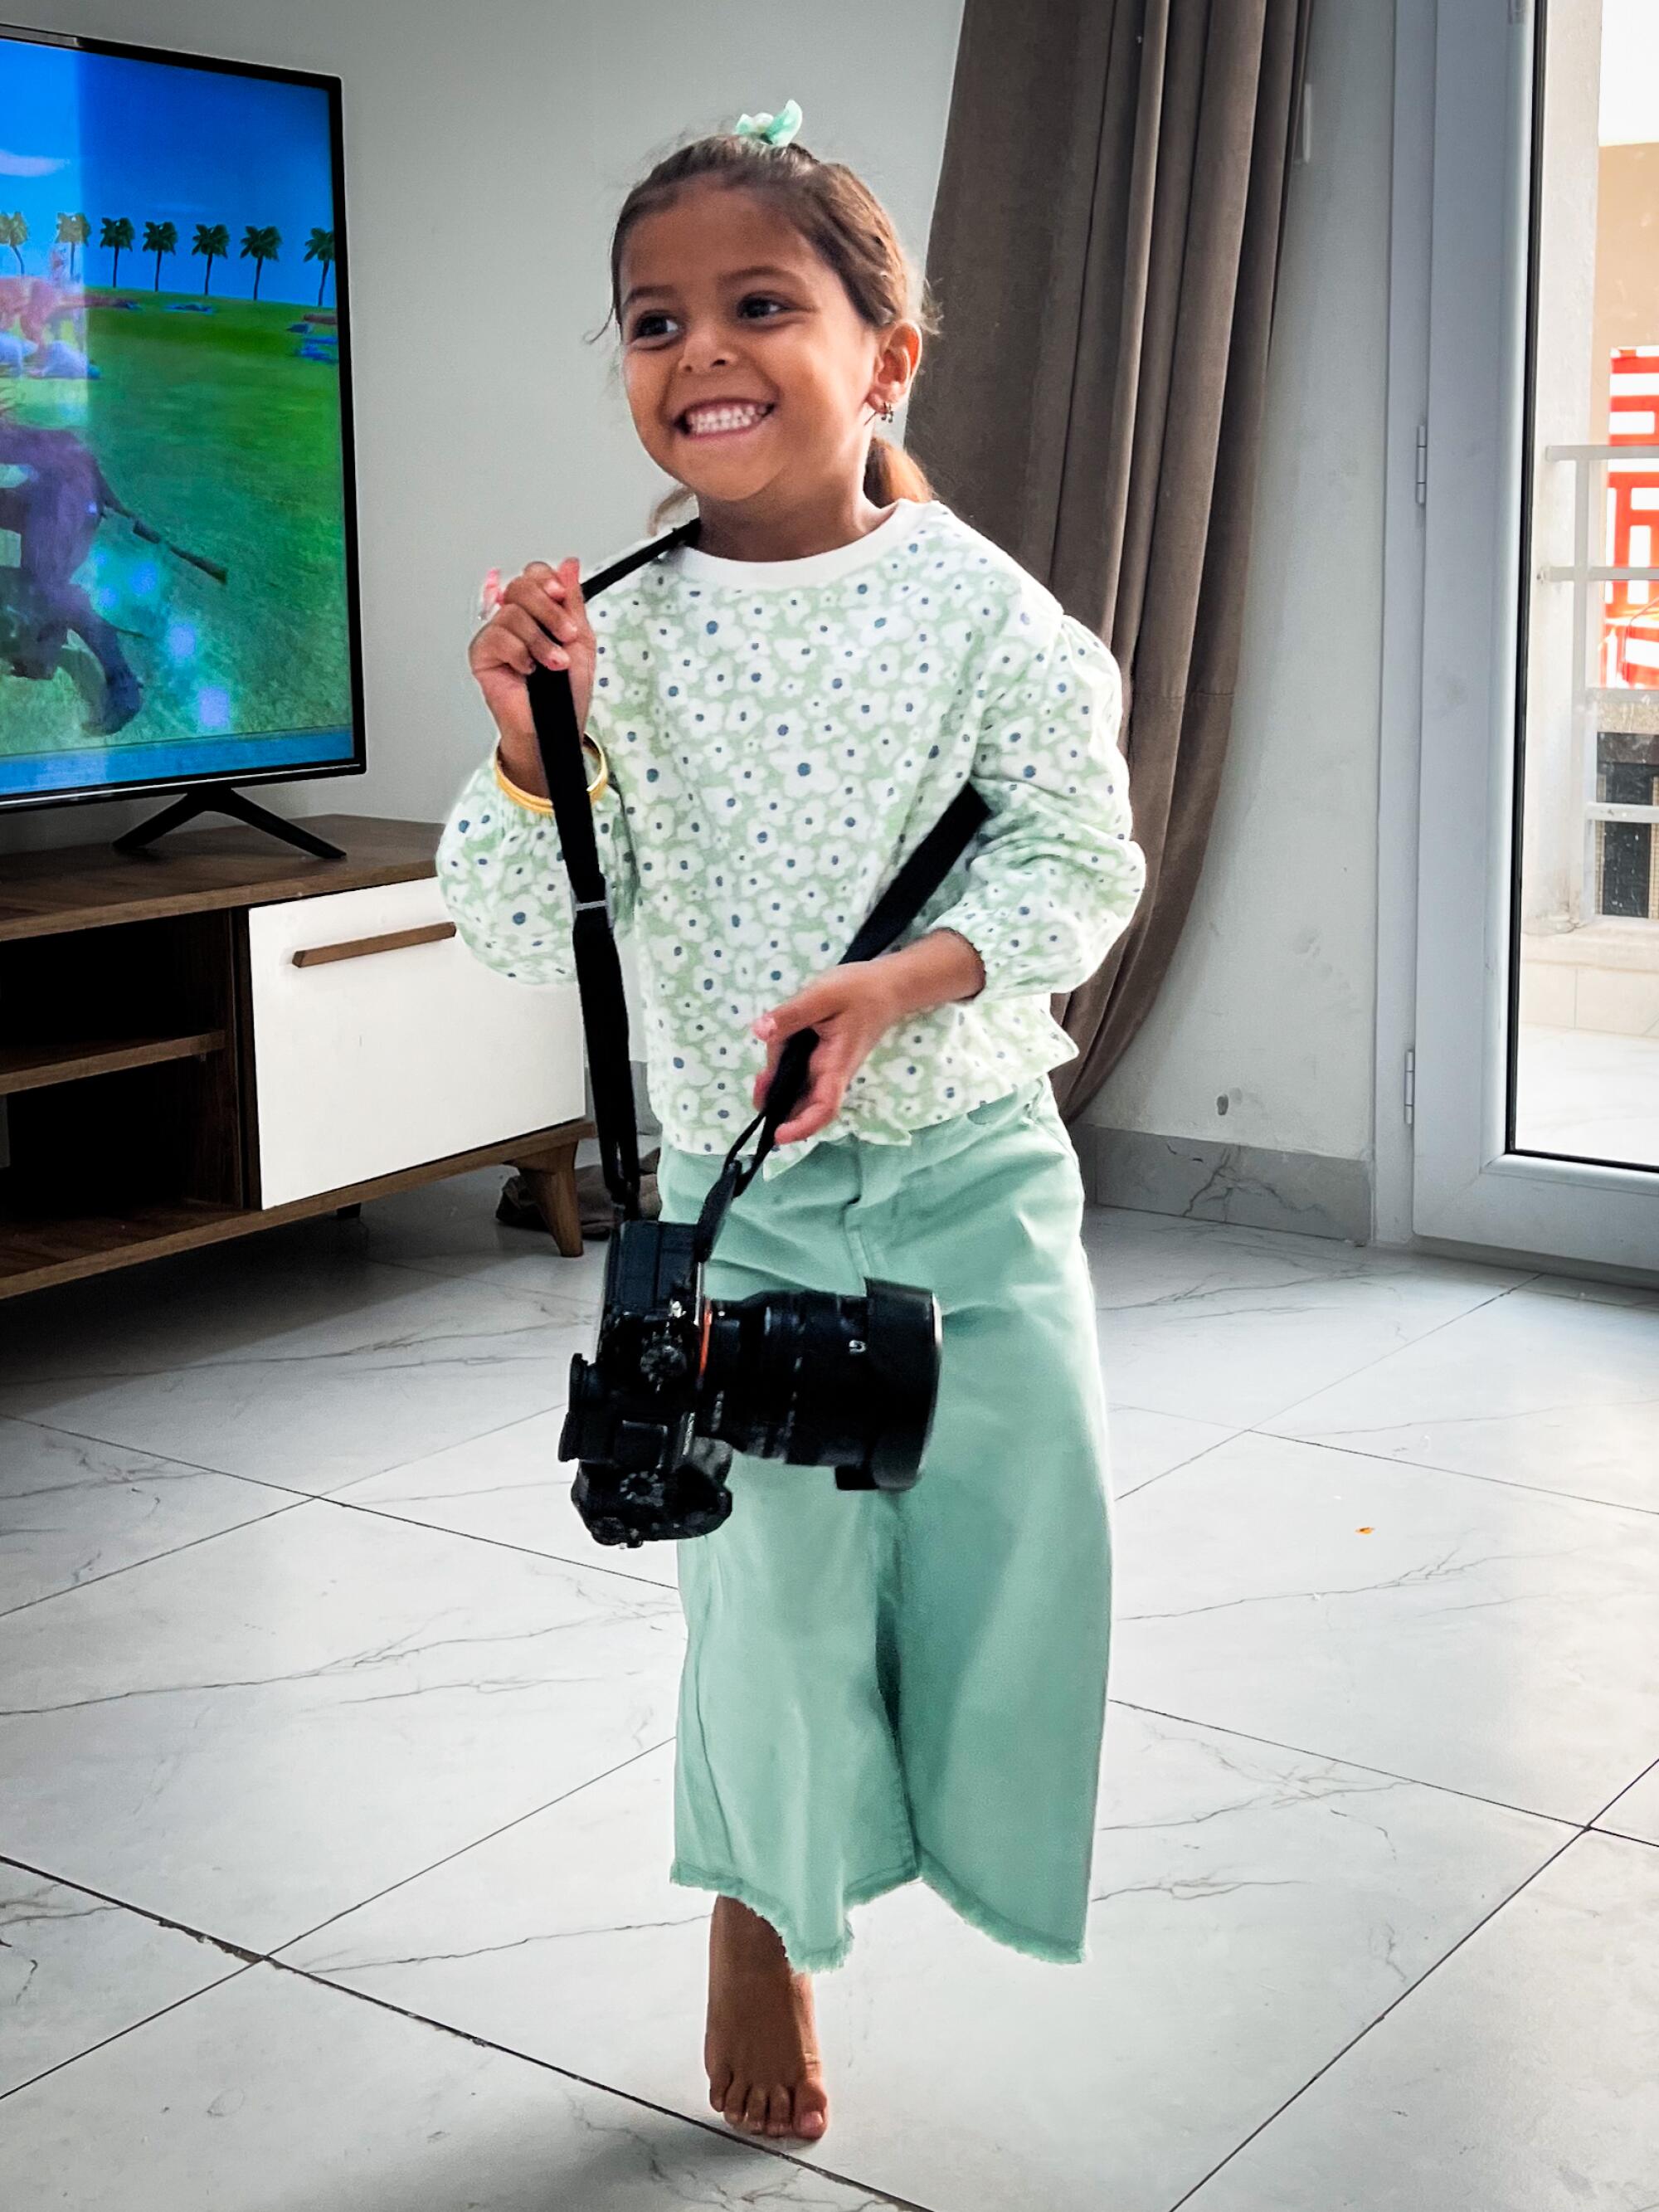 5 岁的法特玛·纳布汉 (Fatma Nabhan) 正在玩相机。 